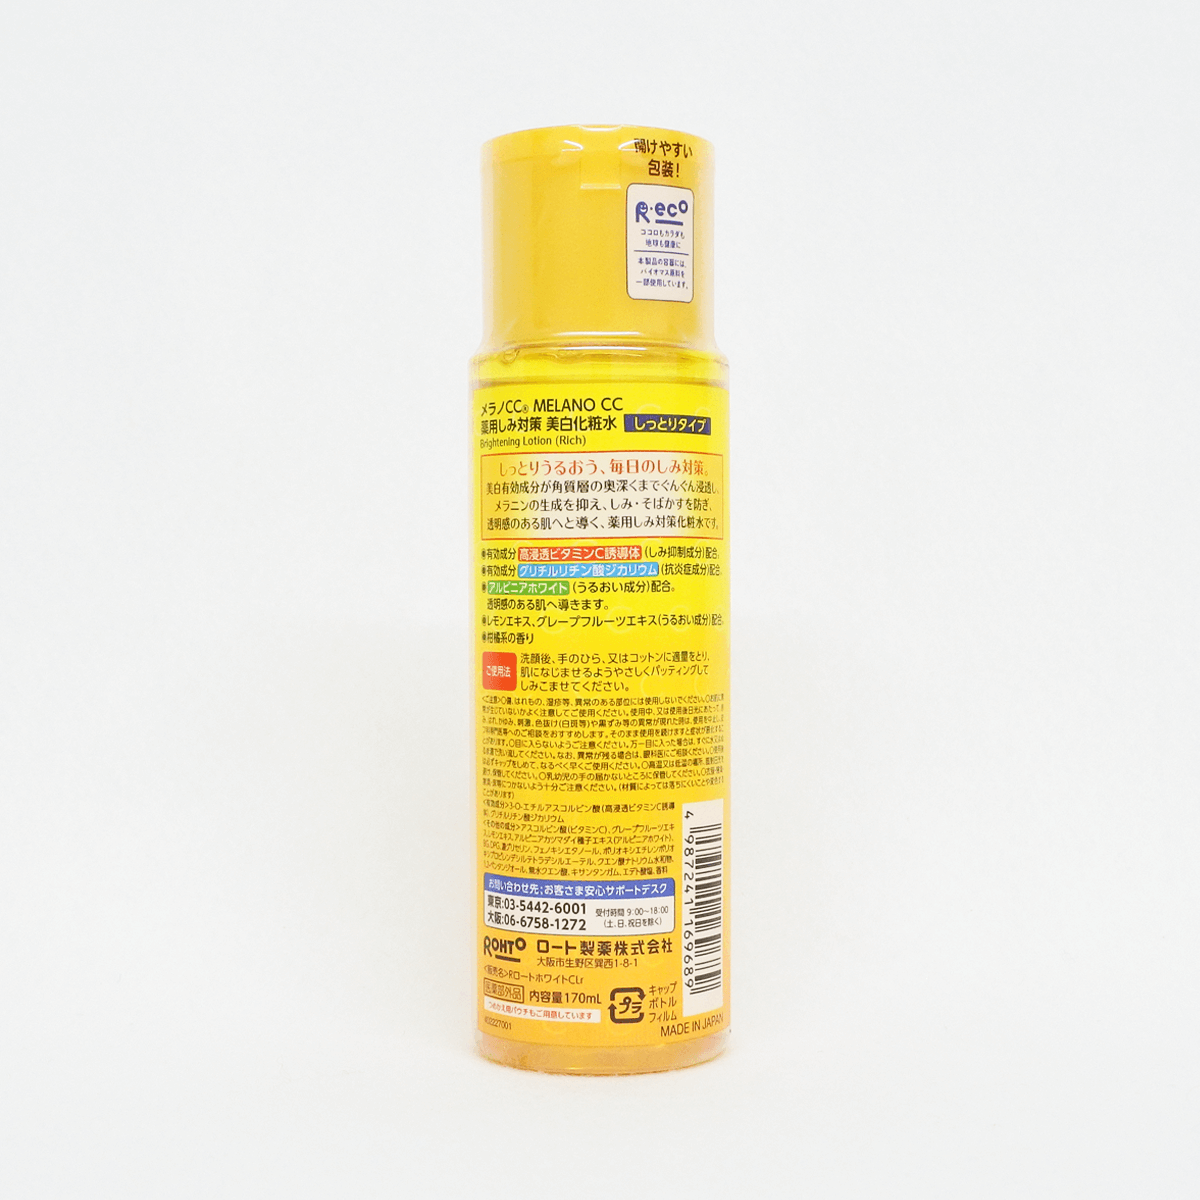 乐敦制药 Melano CC 药用淡斑美白化妆水 保湿型 170ml